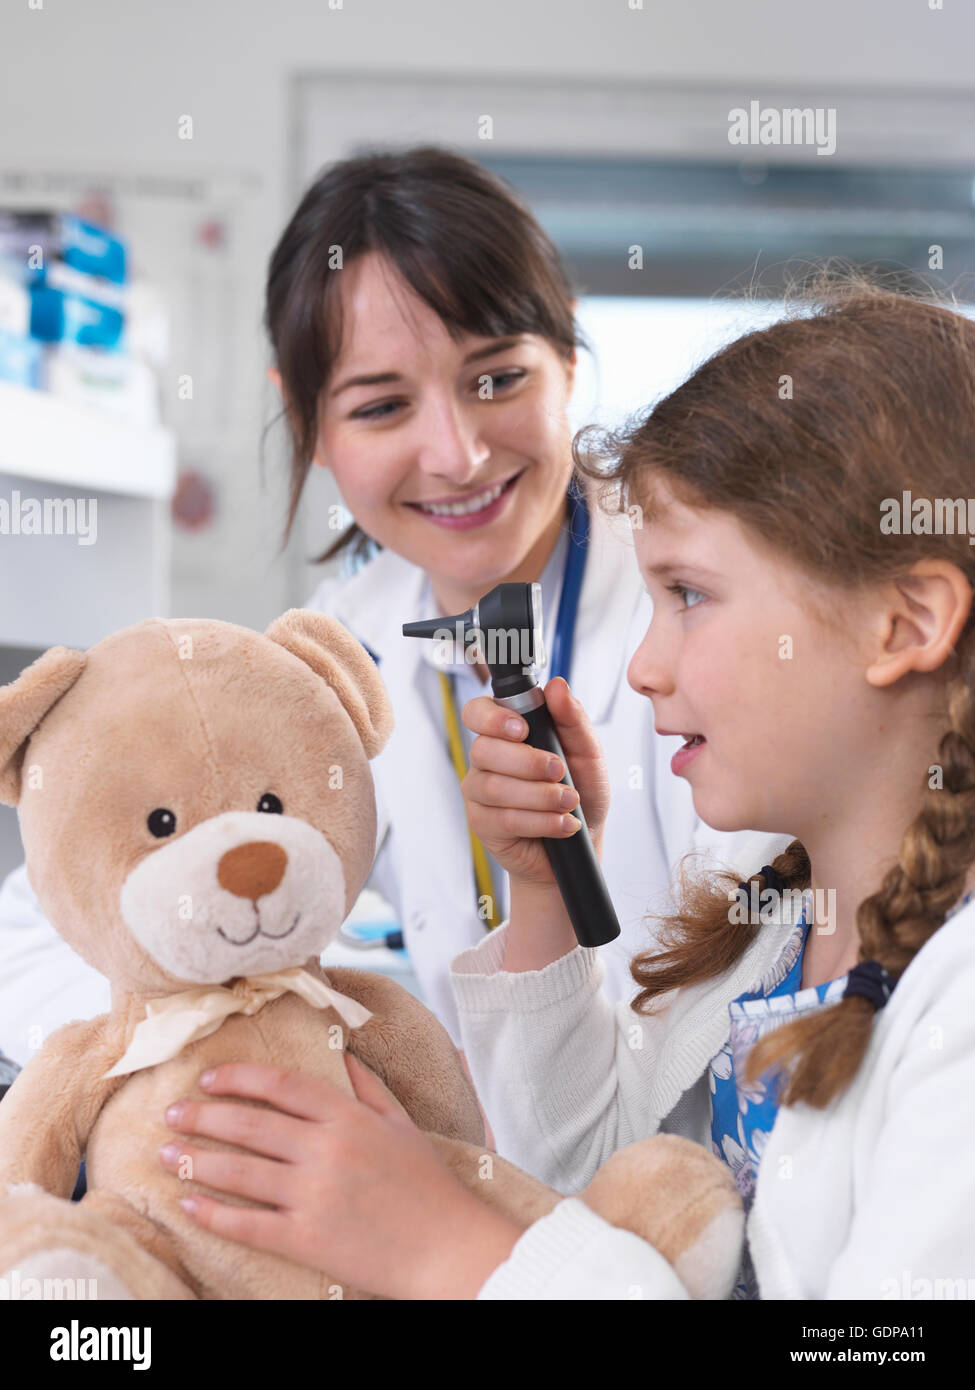 Mädchen mit Otoskop Teddybär prüfen Stockfoto